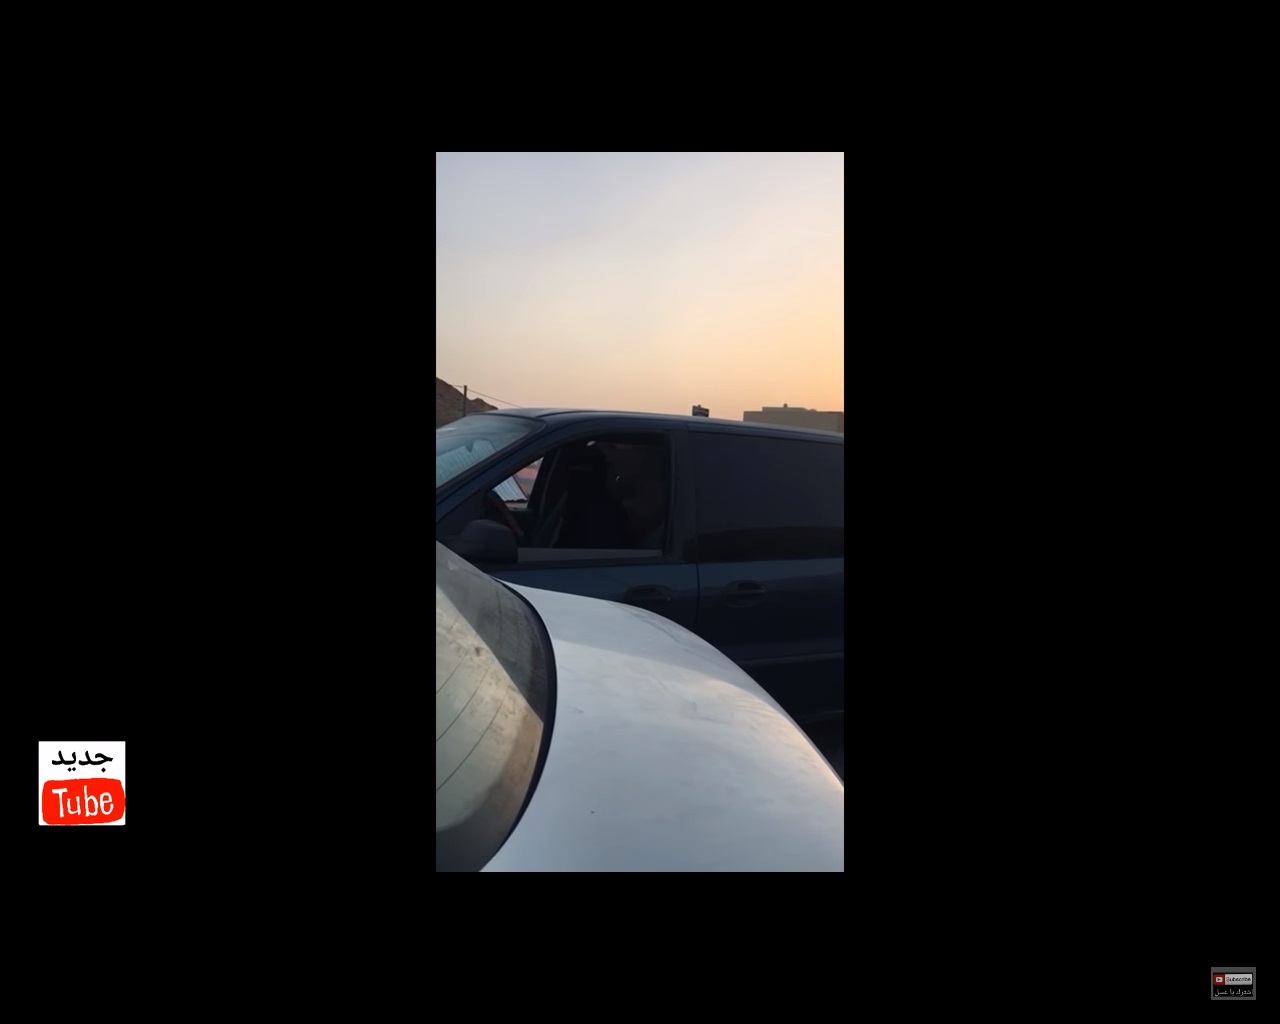 فيديو مثير للجدل.. حاول تصوير سيدة تقود سيارتها بالرياض فشتمته